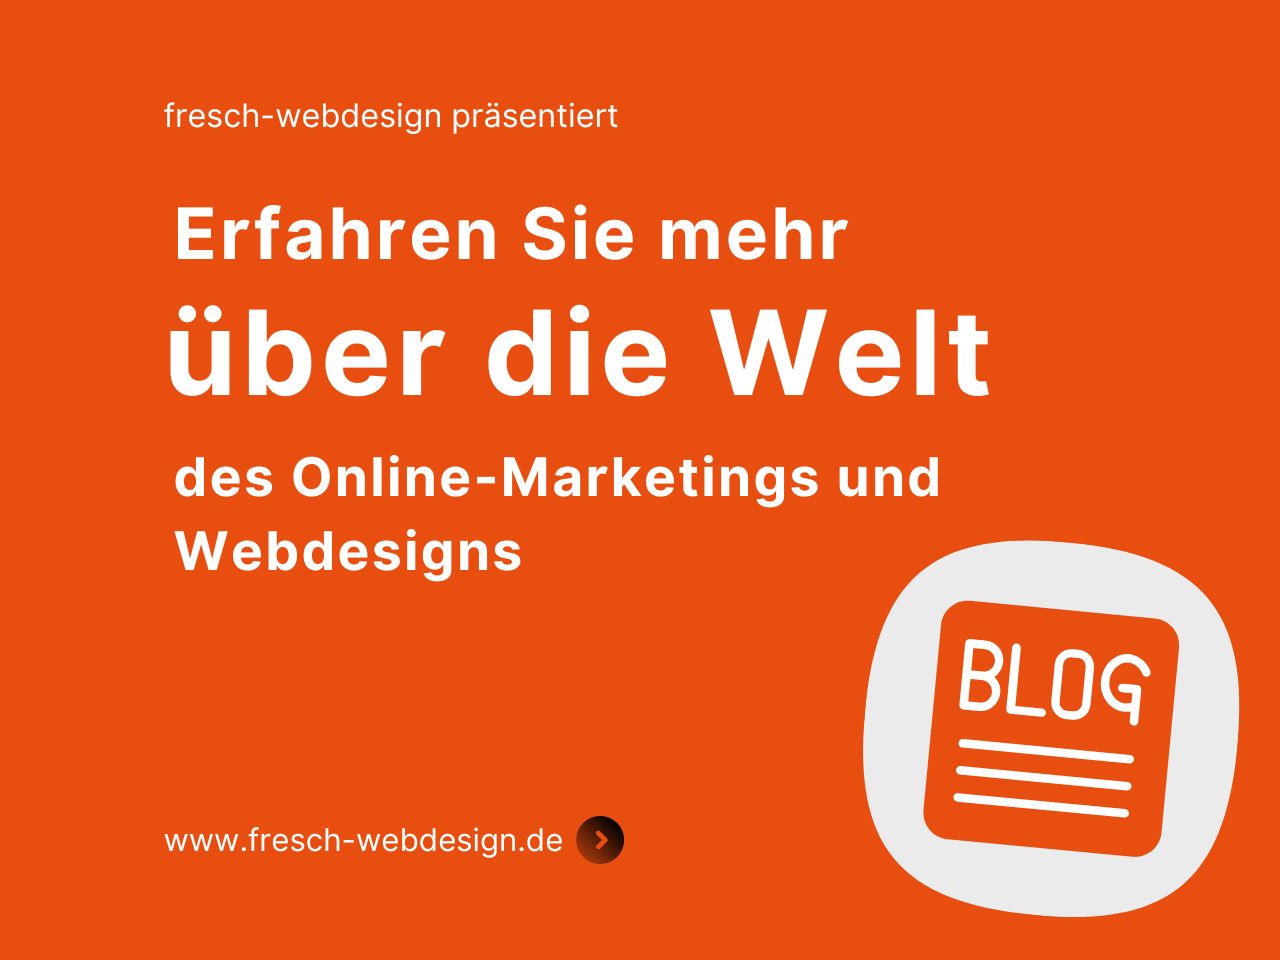 Blog fresch-webdesign